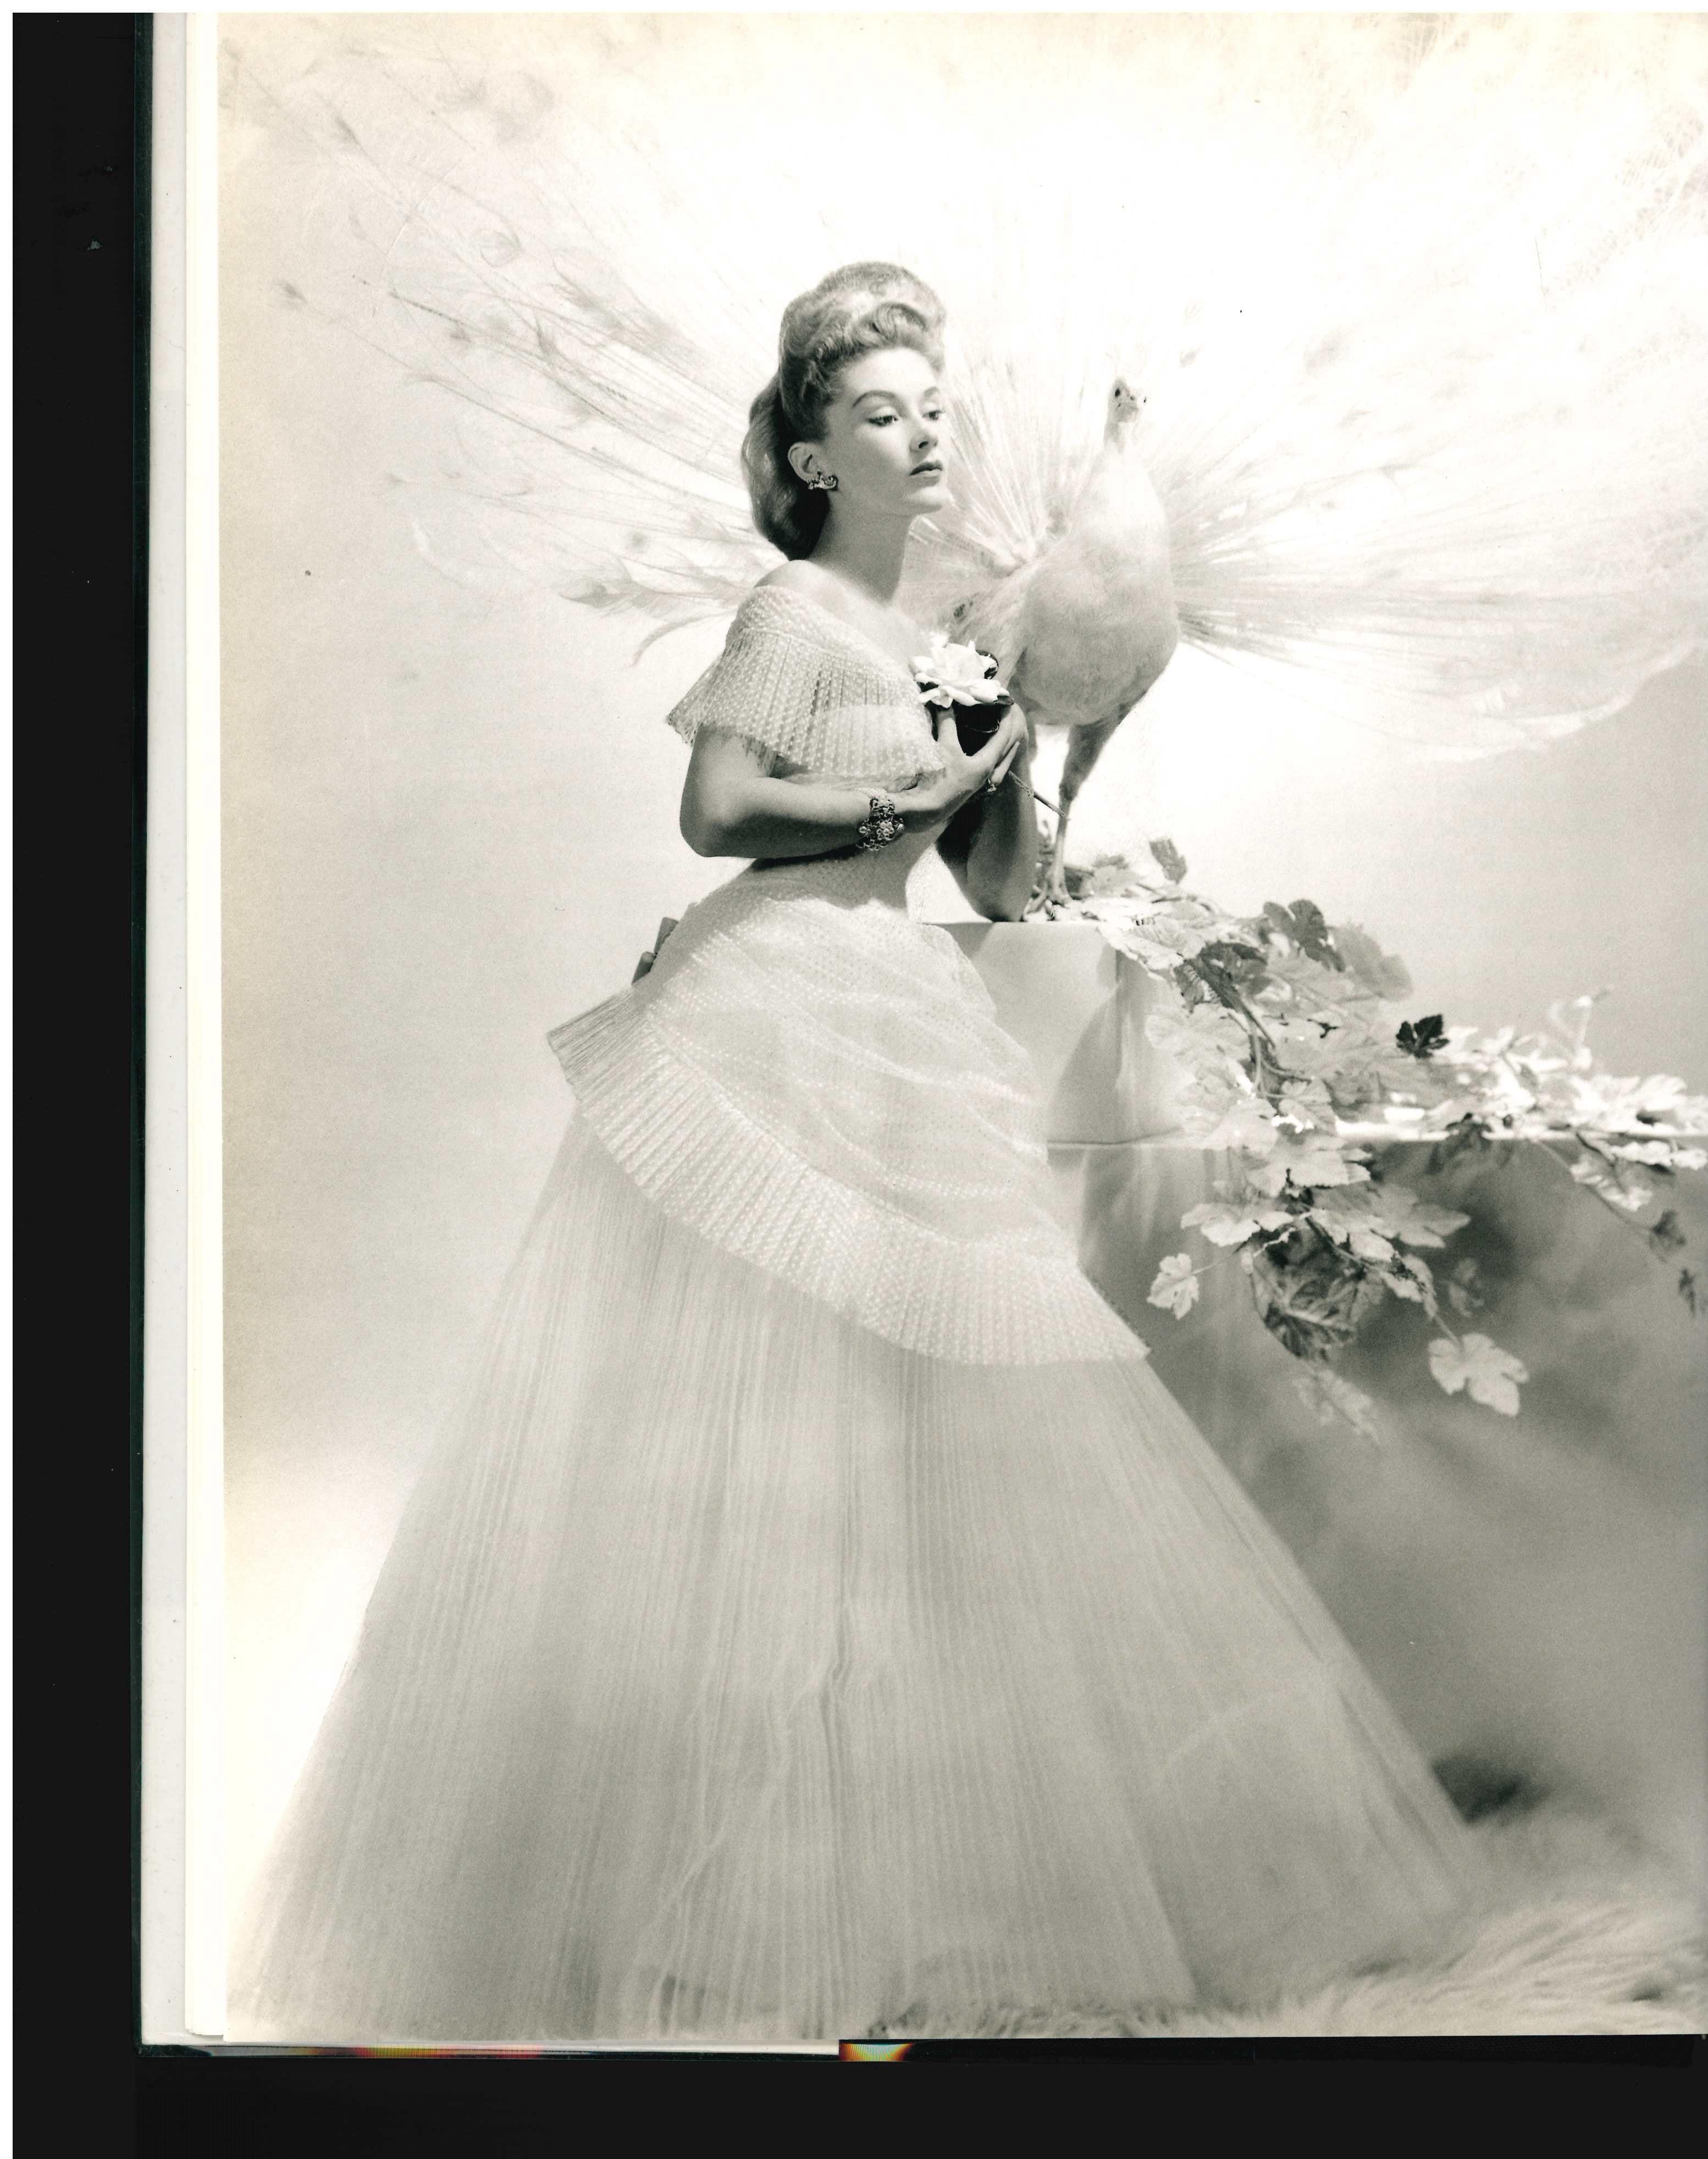 Par David Seidner & Martin Harrison

Lisa Fonssagrives a été l'un des plus grands mannequins du XXe siècle et la muse de certains des photographes les plus influents, notamment Horst, Man Ray, Richard Avedon et son mari Irving Penn. Elle a figuré